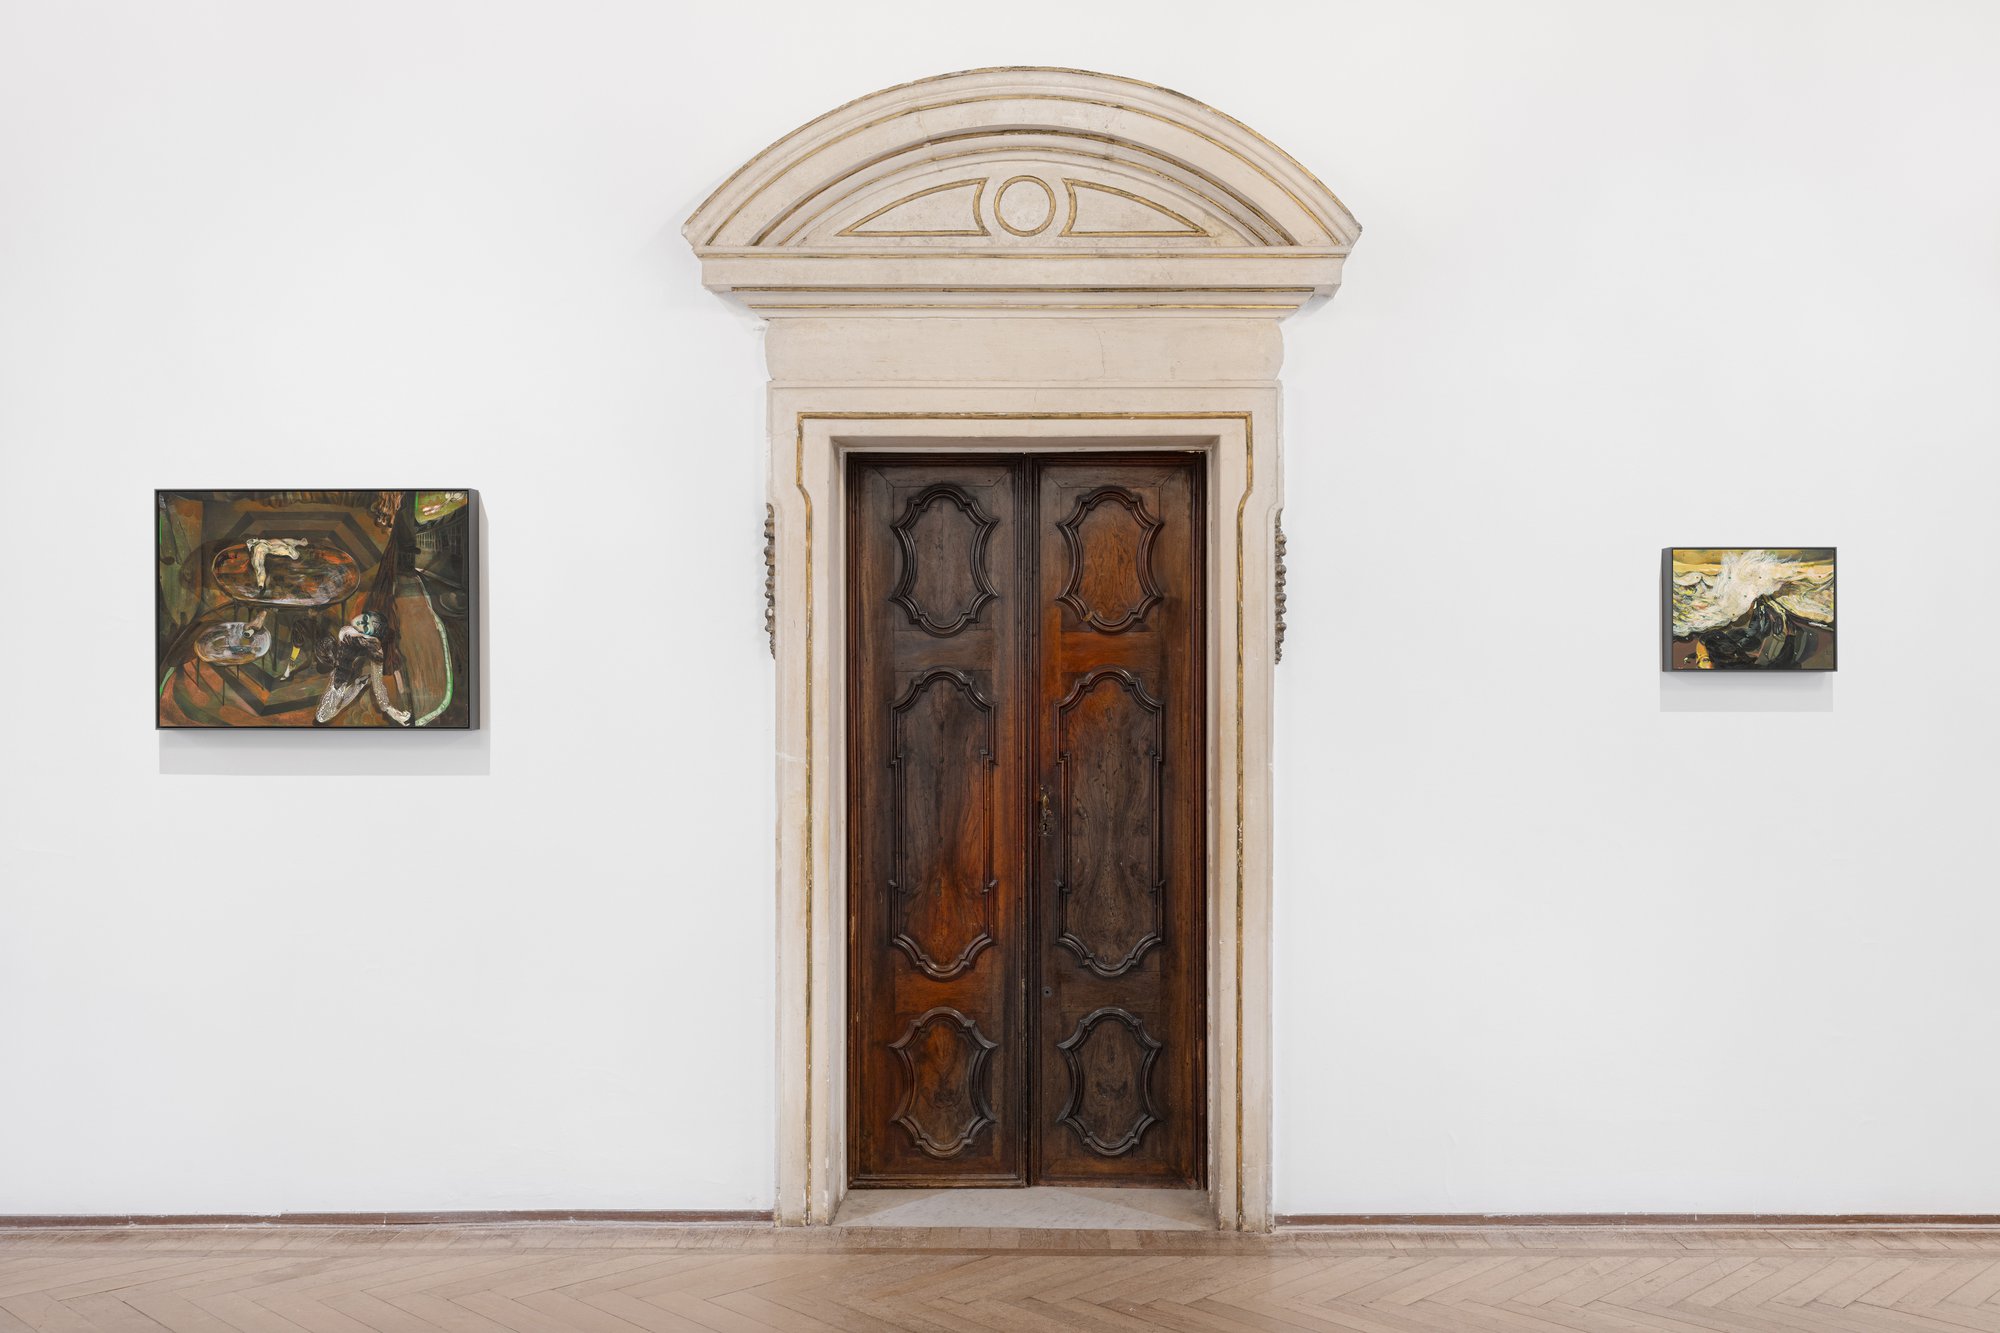 Installation view, Guglielmo Castelli, Improving Songs for Anxious Children, Istituzione Fondazione Bevilacqua la Masa, Venice, 2024